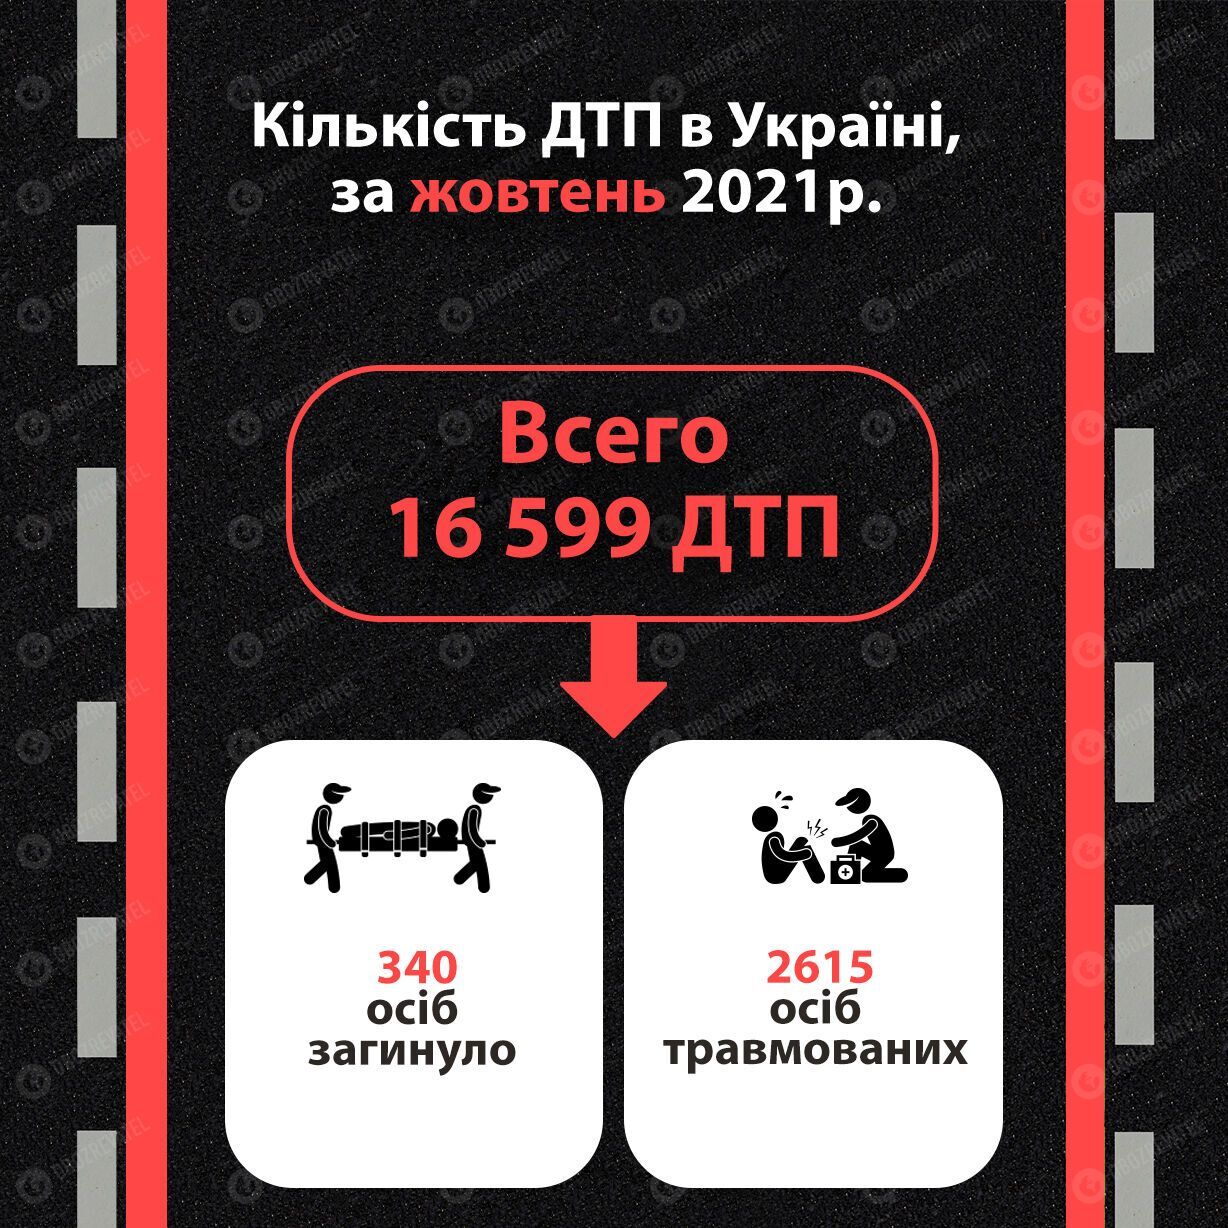 Статистика дорожньо-транспортних пригод в Україні.